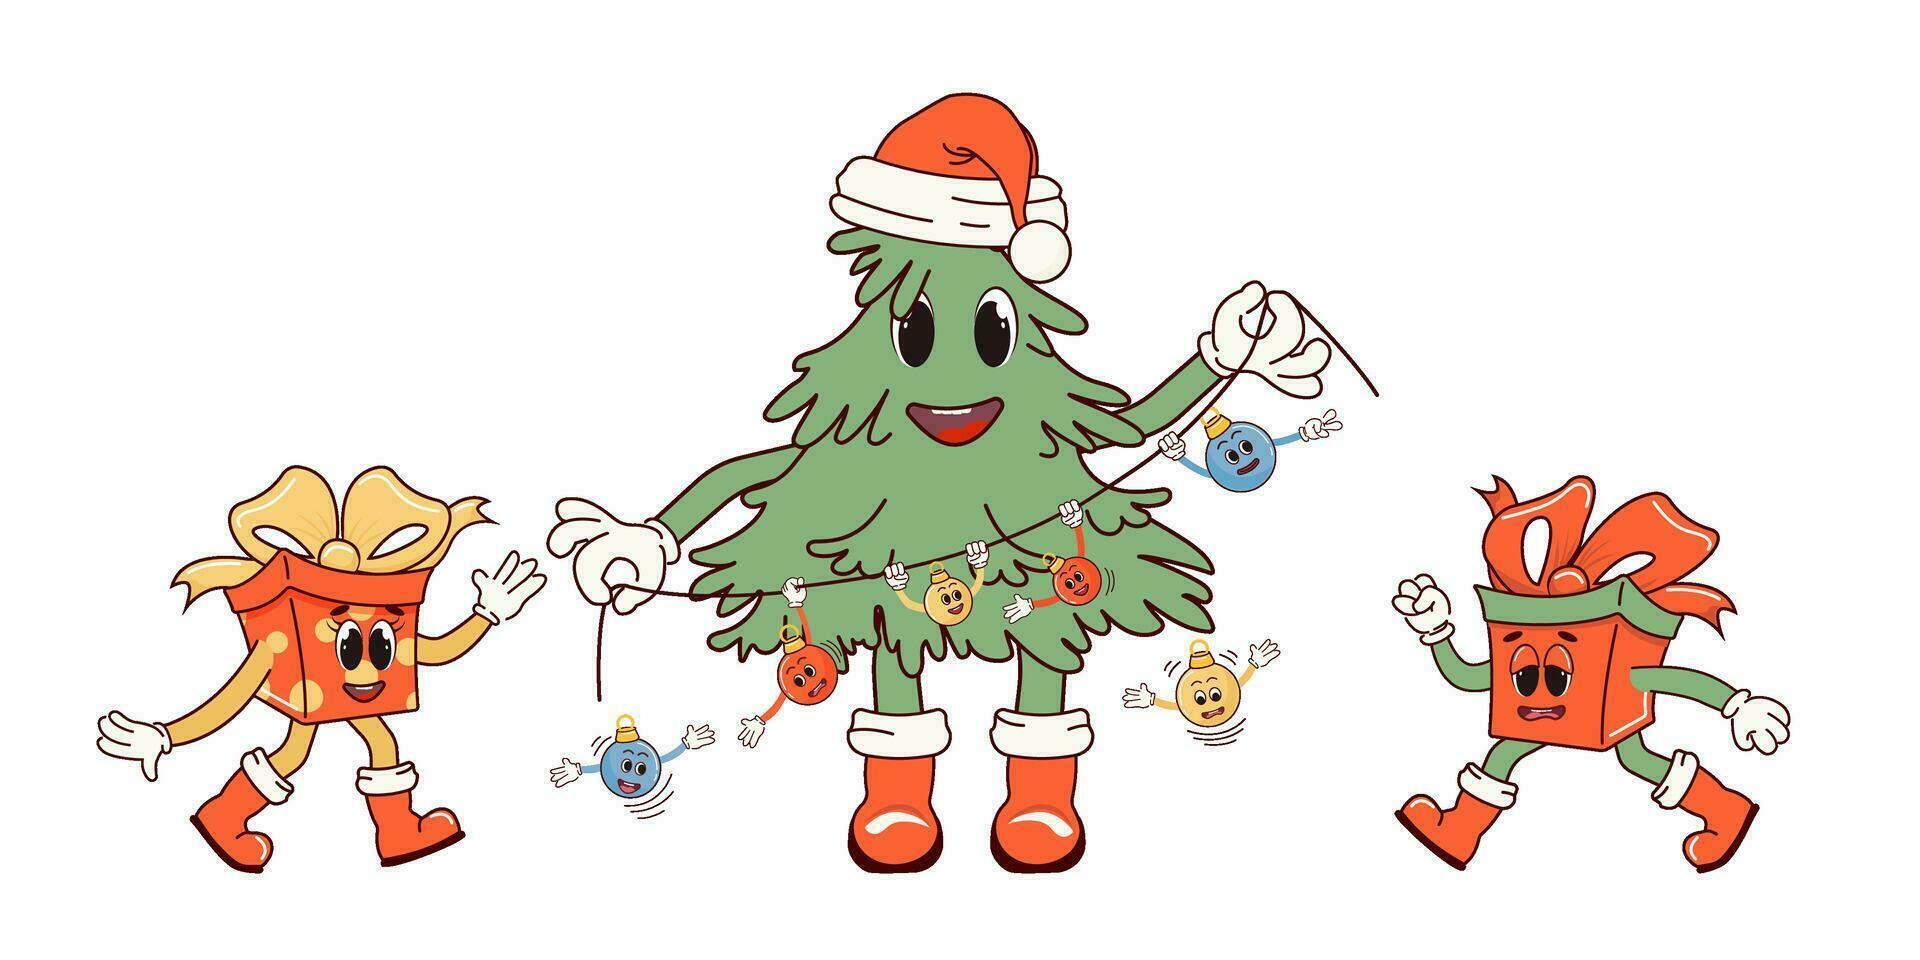 vrolijk, vrolijk geschenk dozen en Kerstmis boom. retro karakter in tekenfilm modieus groovy stijl. de atmosfeer is van de Jaren 60 en jaren 70. vrolijk Kerstmis en gelukkig nieuw jaar. vector